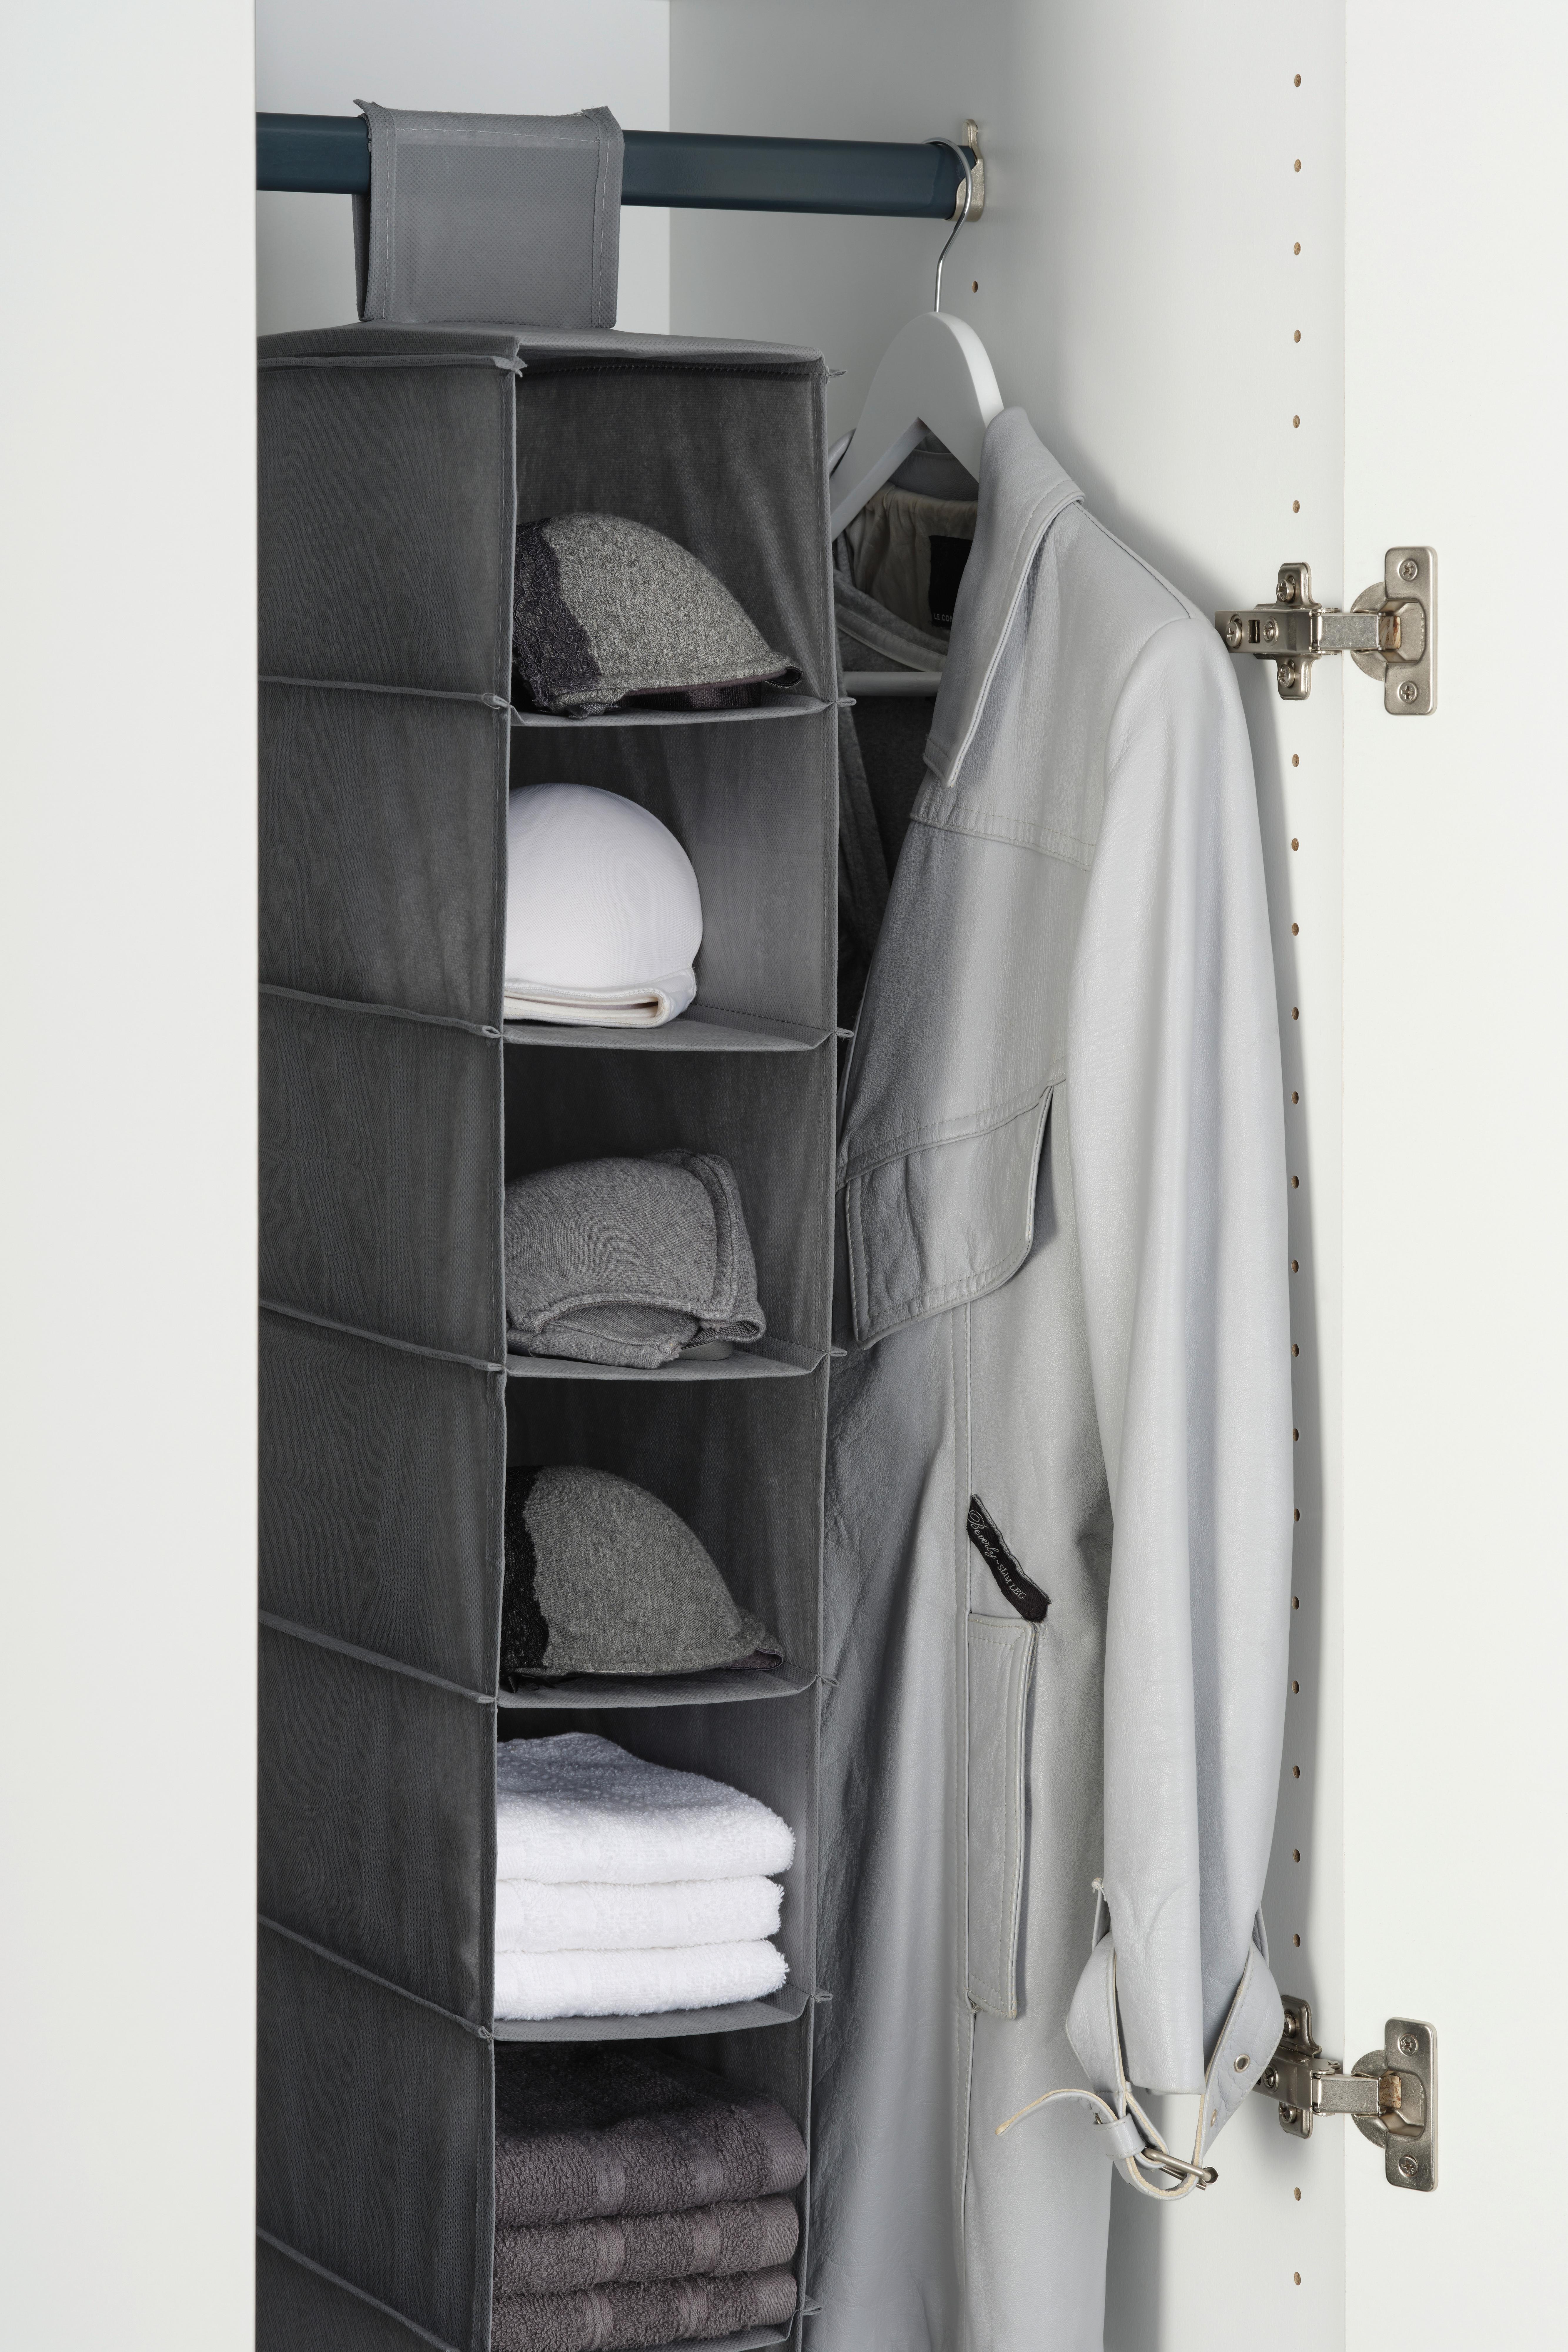 Felakasztható Rendszerező Kläck - Szürke, konvencionális, Karton/Textil (33/125/15cm) - Modern Living